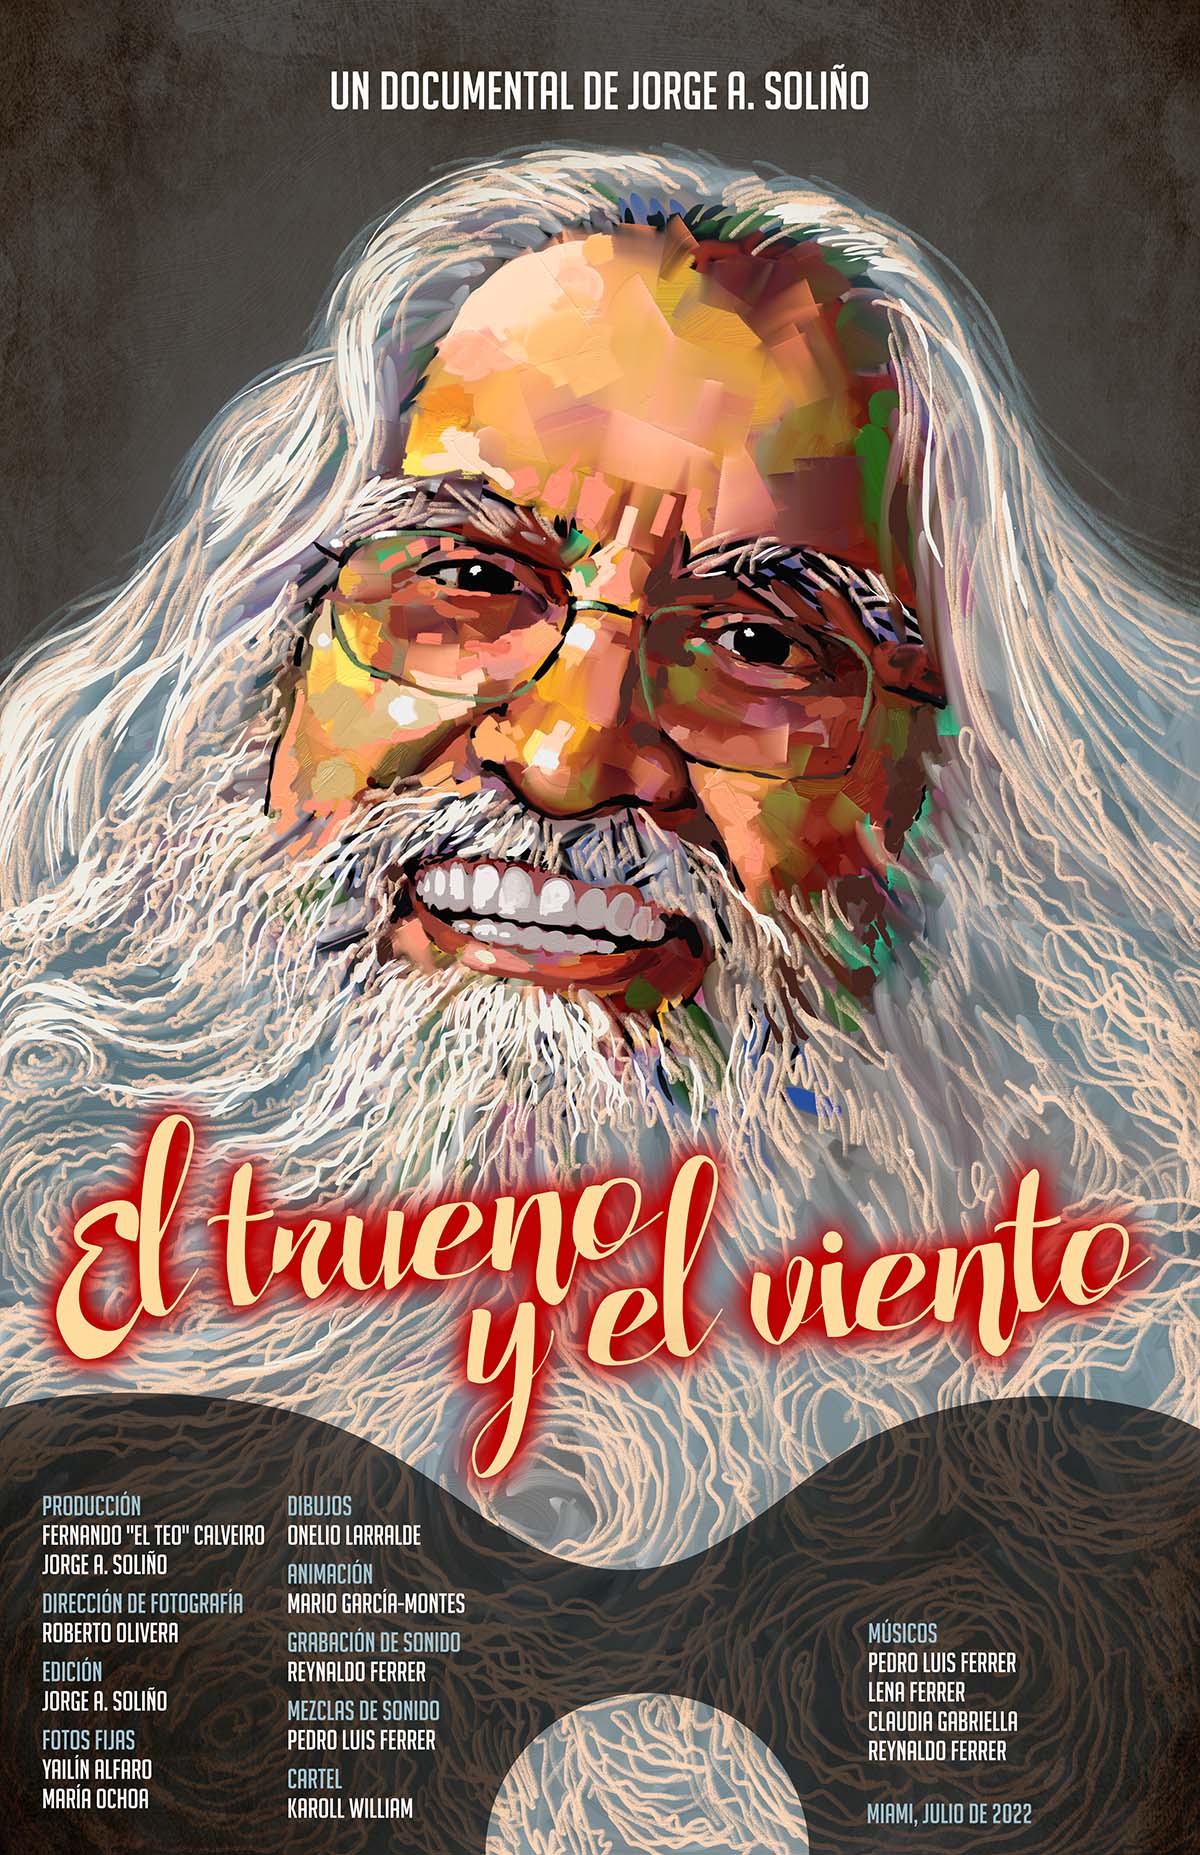 El trueno y el viento- Pedro Luis Ferrer - Poster Design by Karoll William Visual Arts